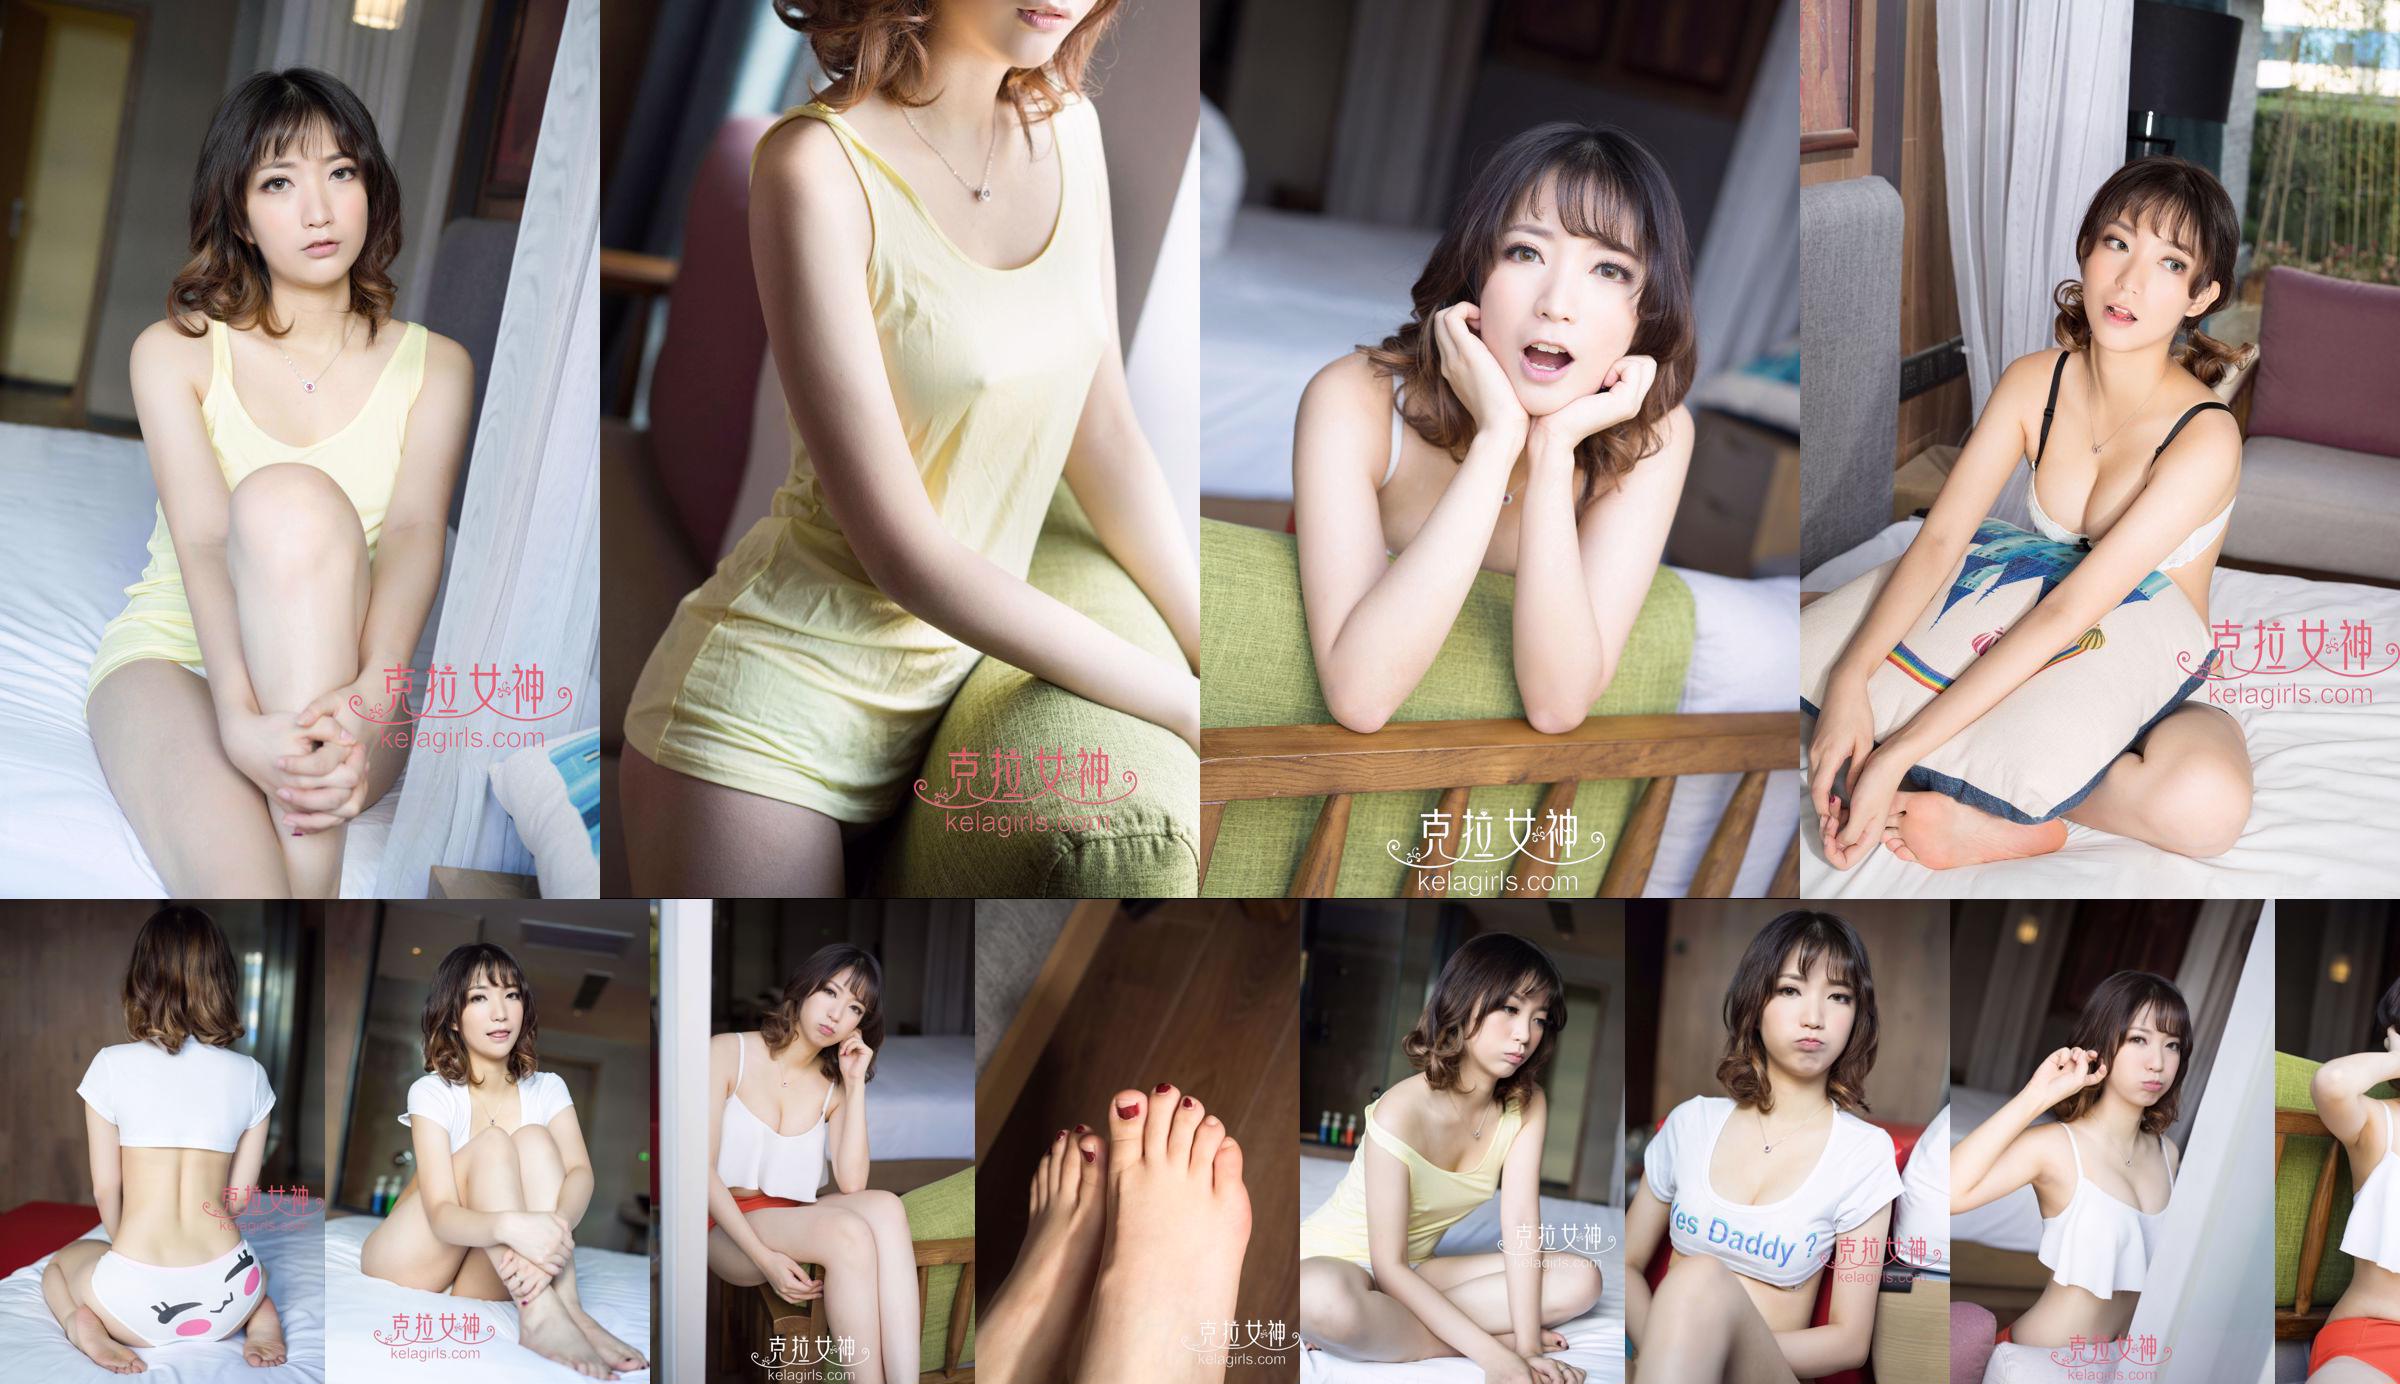 [丽柜Ligui] Network Beauty Model Nana No.274e12 Pagina 74